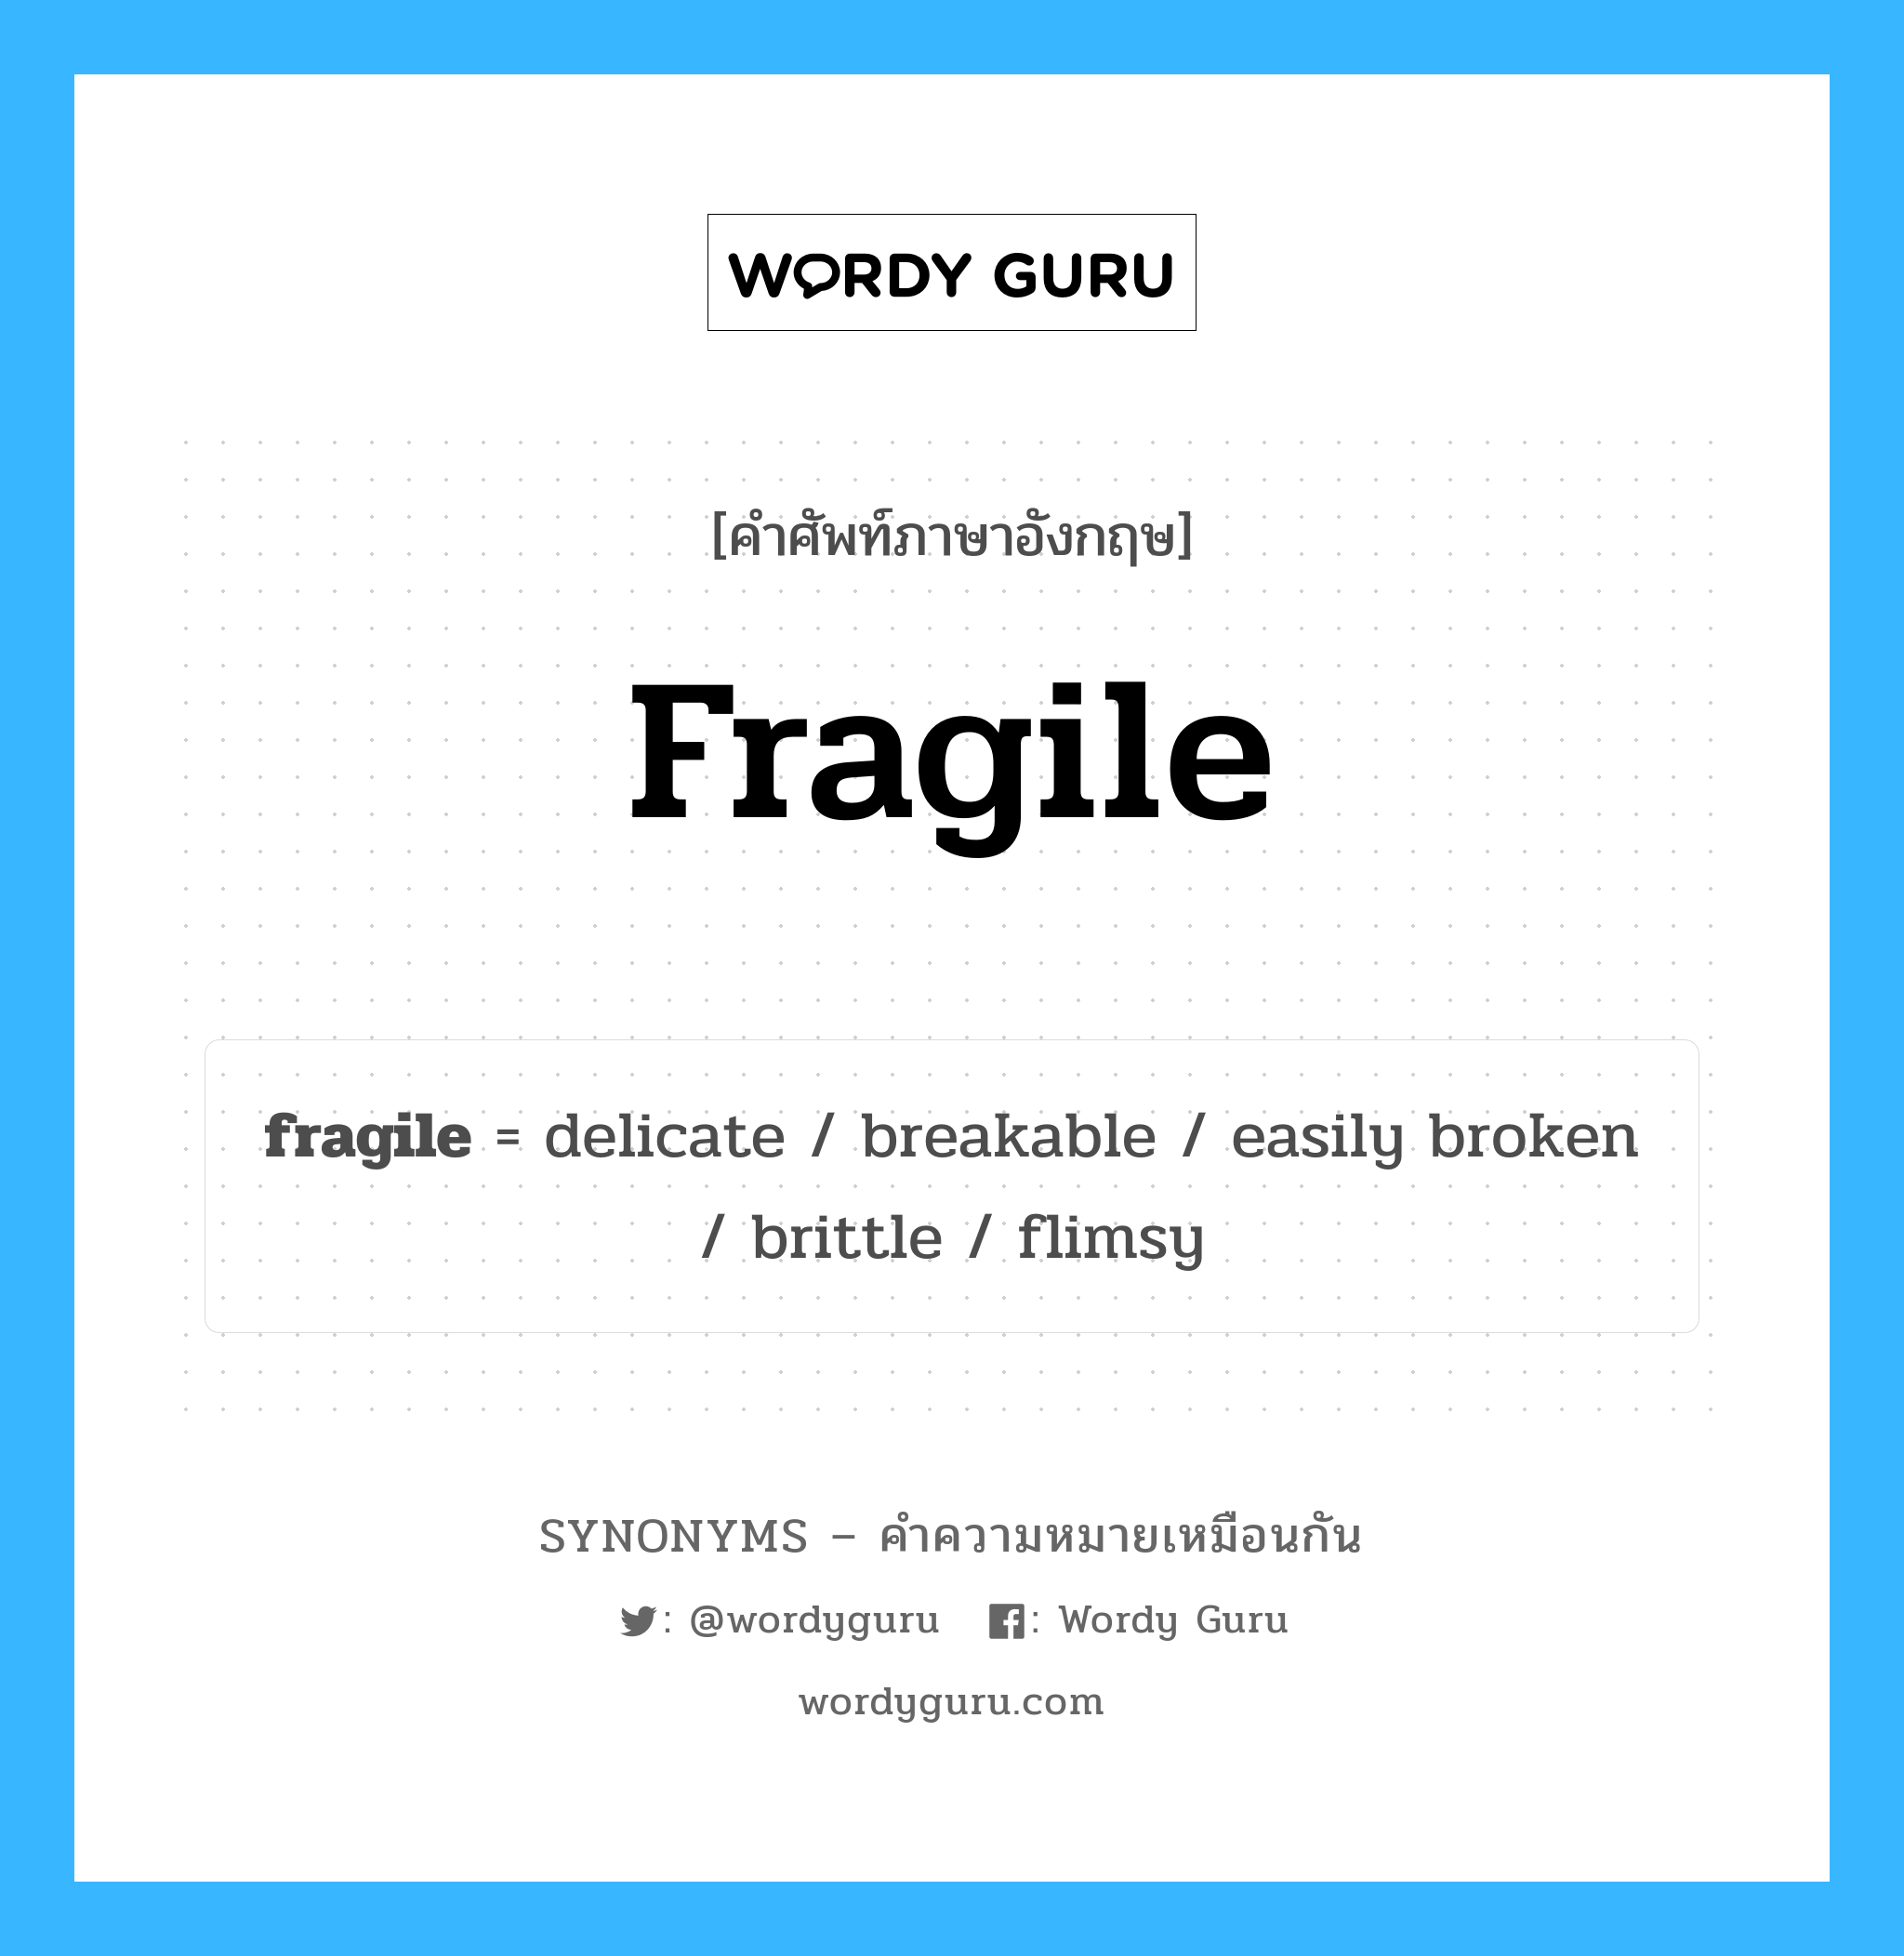 fragile เป็นหนึ่งใน easily broken และมีคำอื่น ๆ อีกดังนี้, คำศัพท์ภาษาอังกฤษ fragile ความหมายคล้ายกันกับ easily broken แปลว่า หักได้ง่าย หมวด easily broken